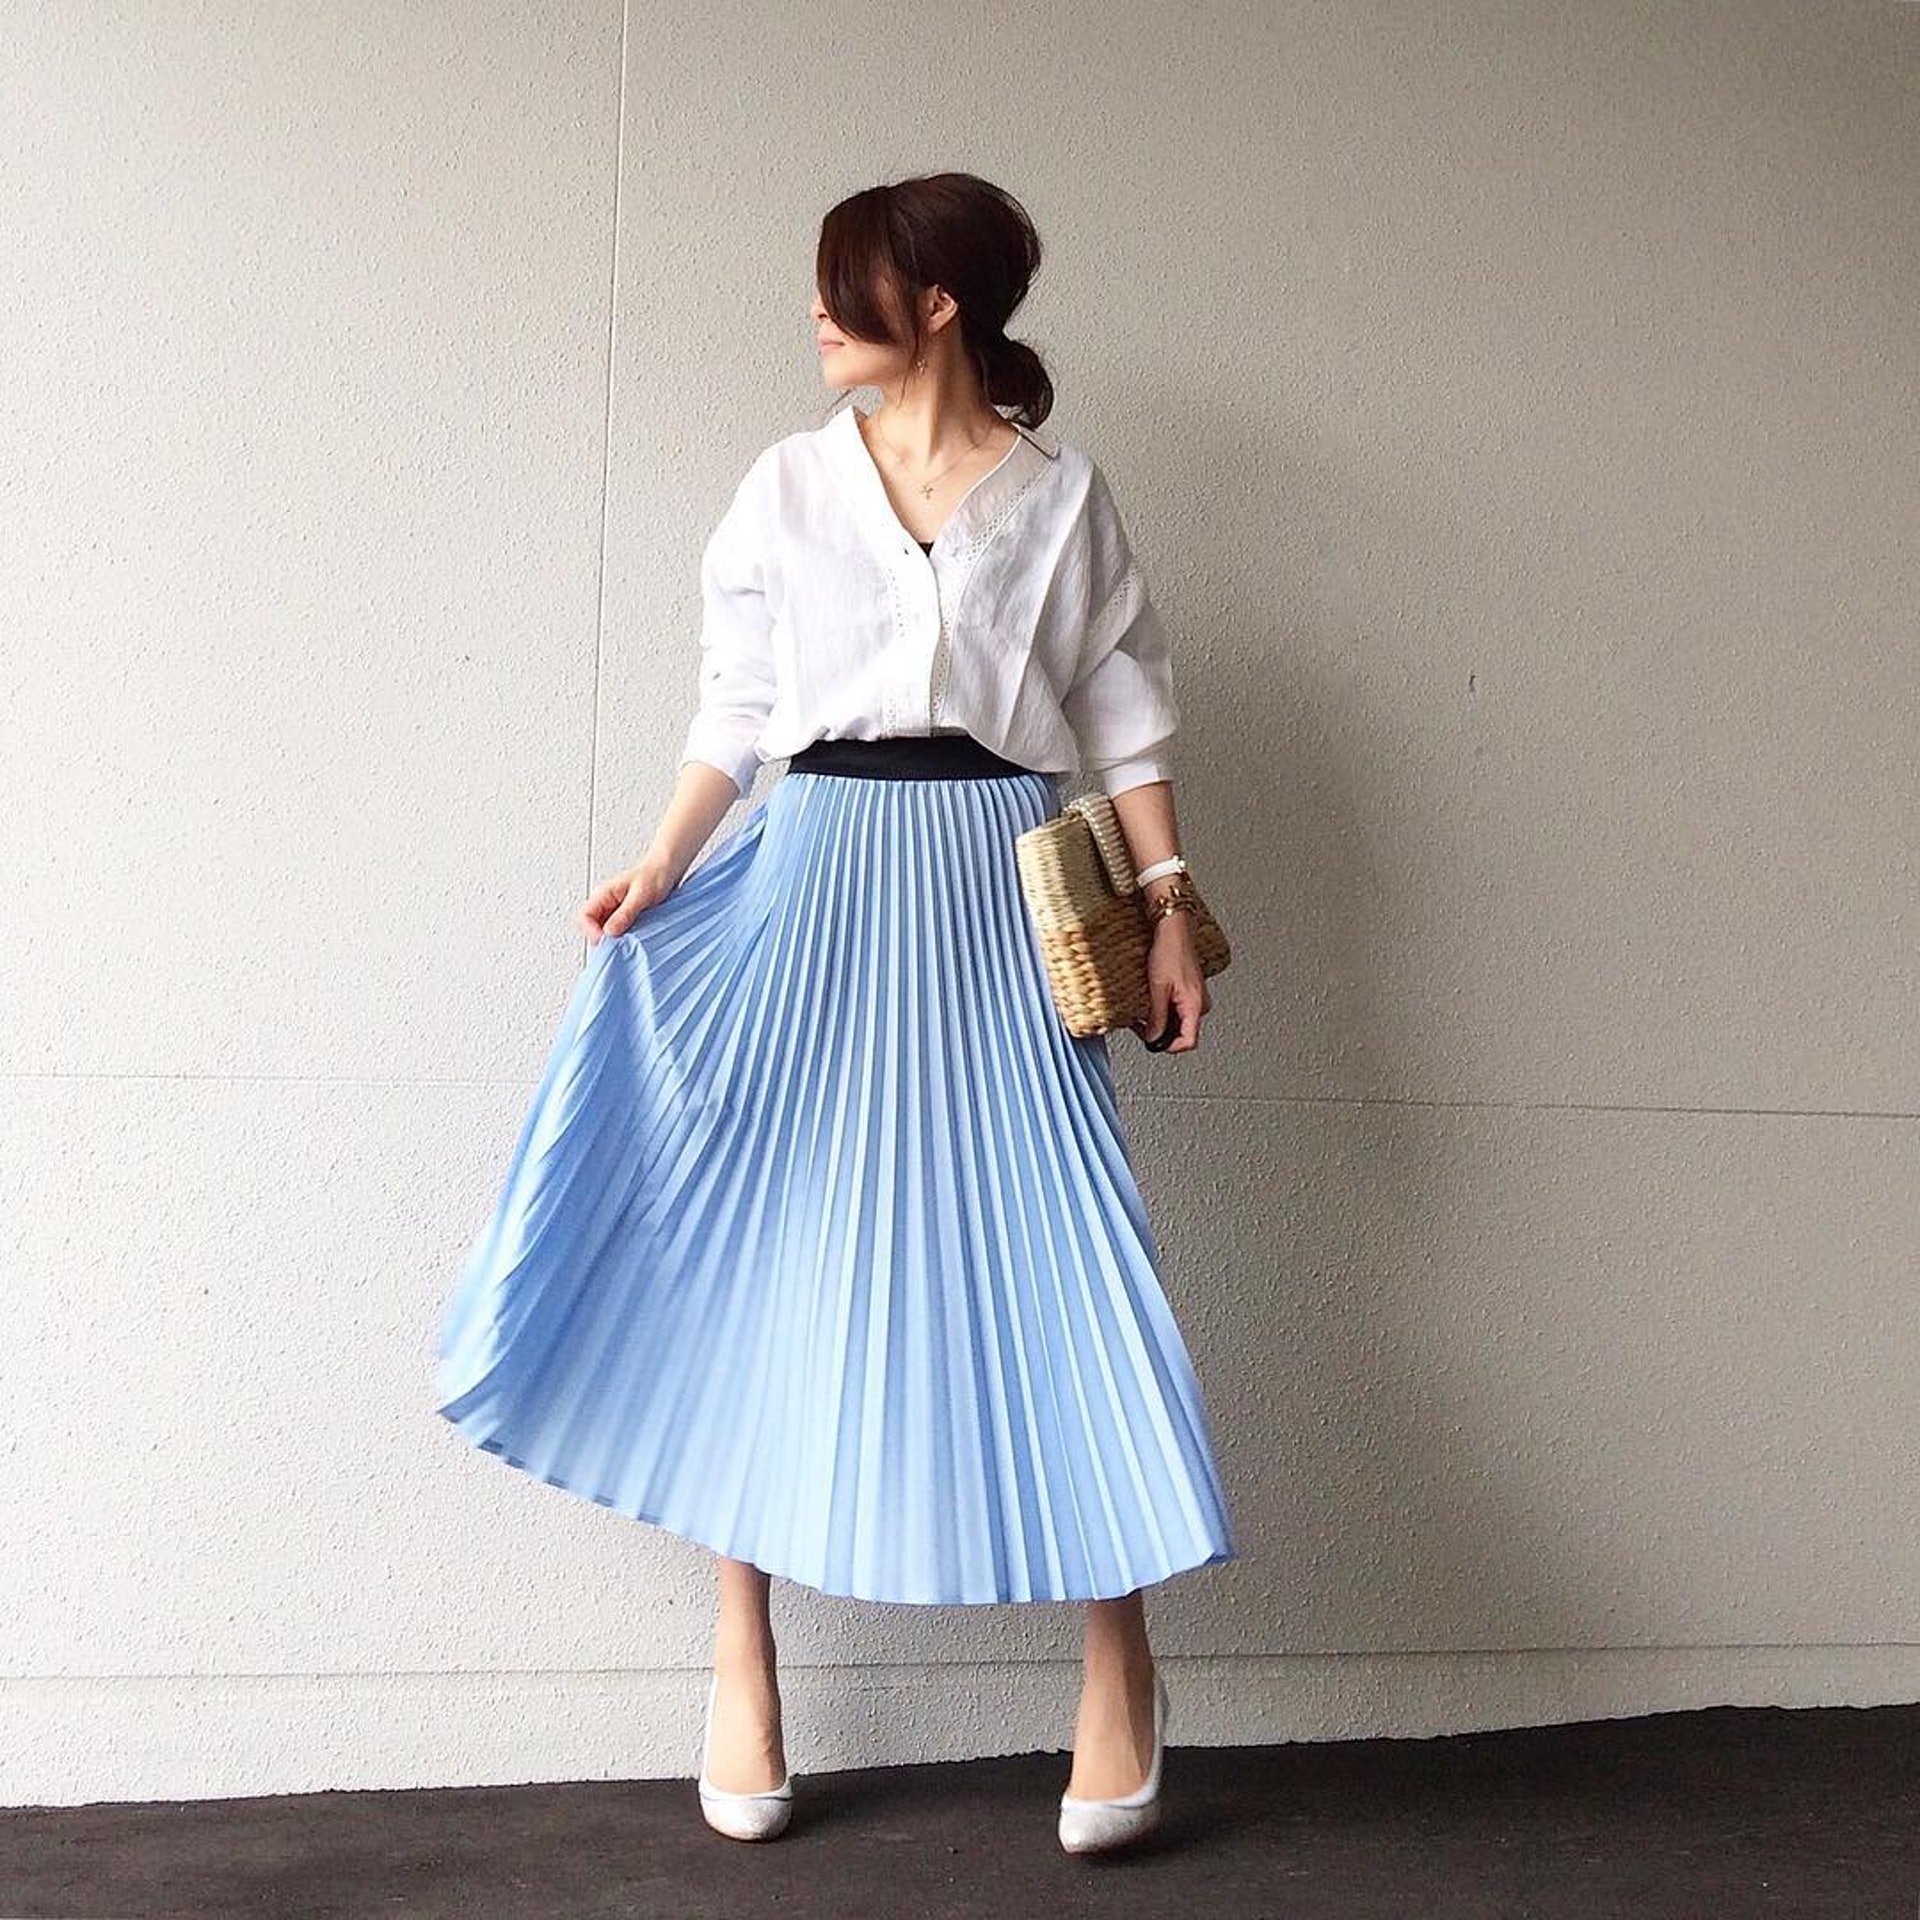 Nakkoo都會盡量選擇白色衣服搭配具色彩的半身裙。(nakkoo555@Instagram)